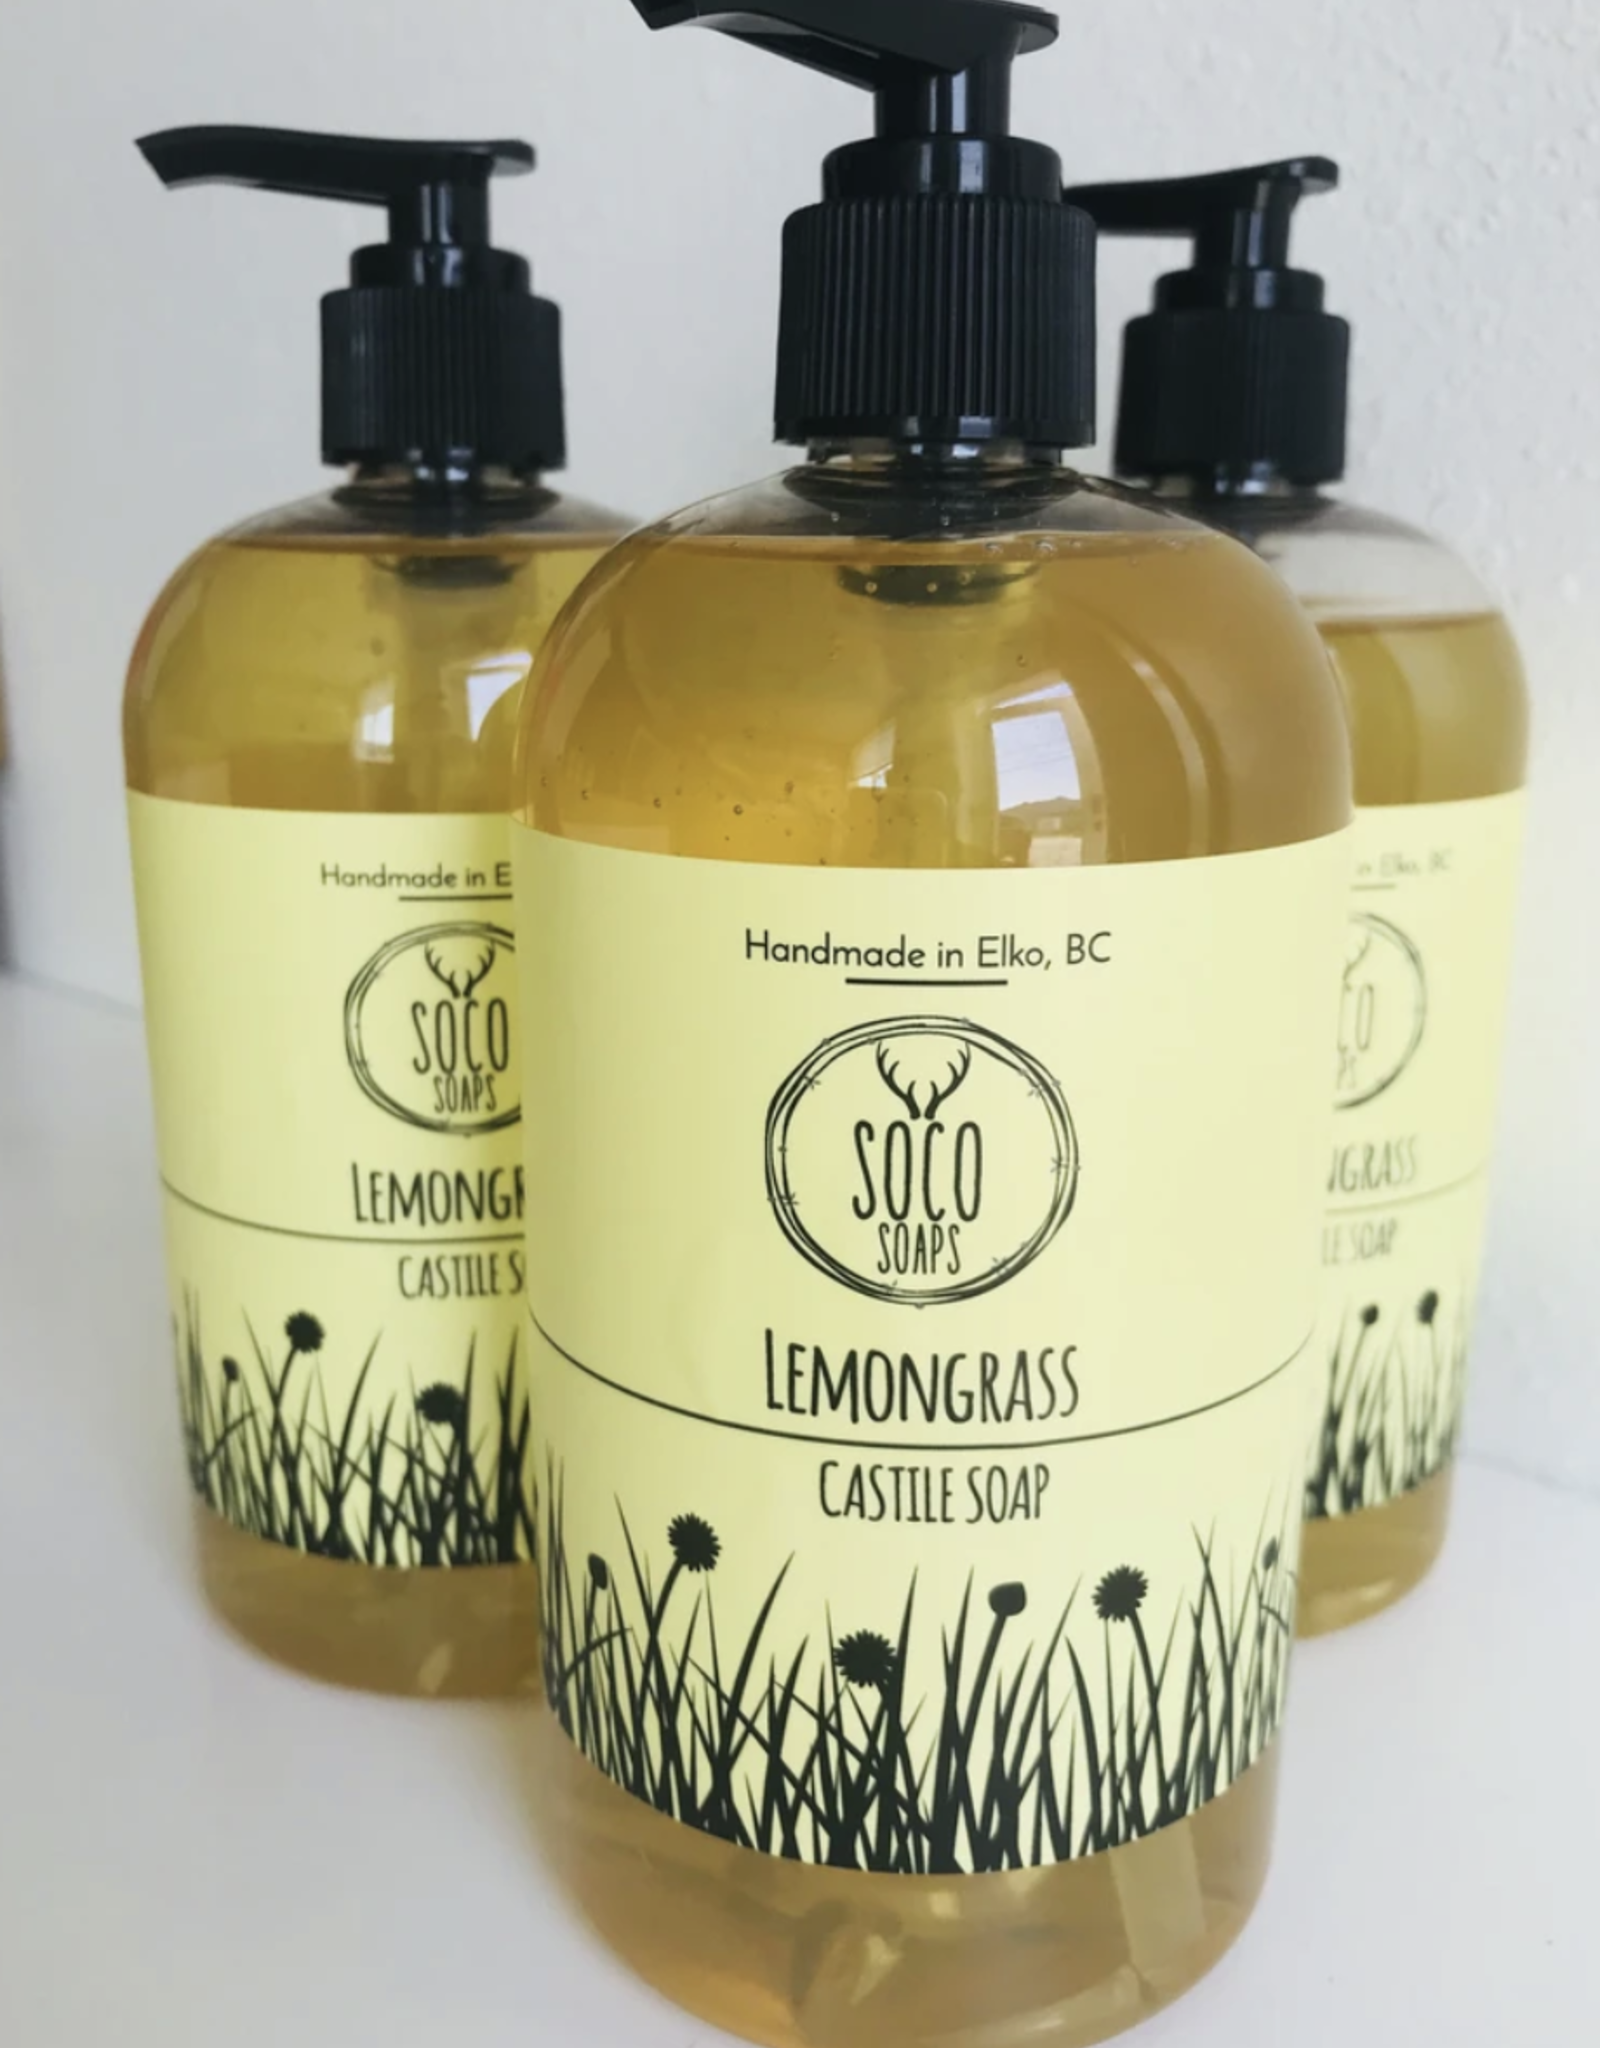 Lemongrass Castile Soap by Soco Soaps